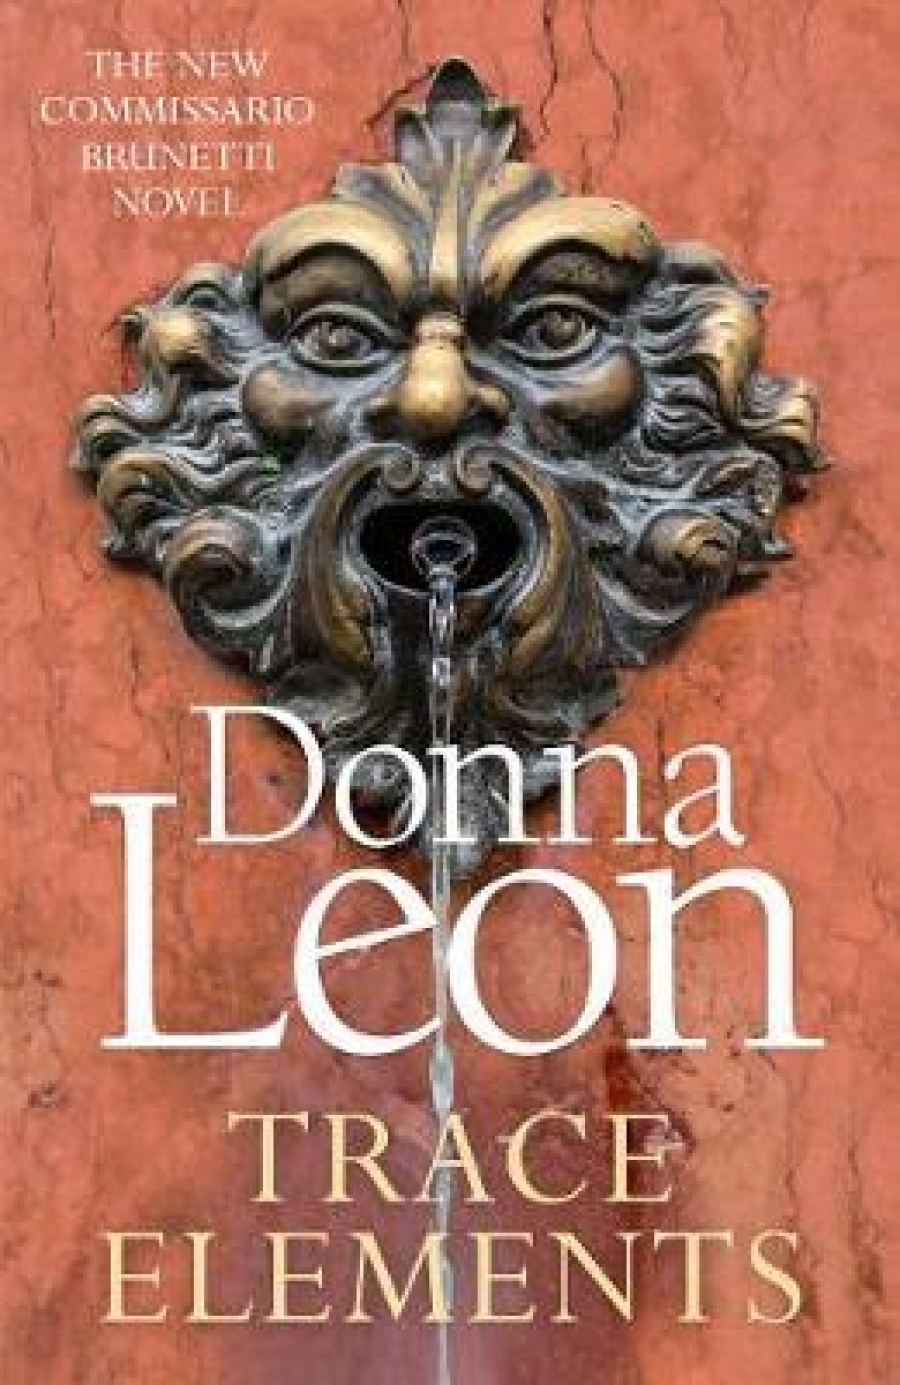 Leon, Donna Trace Elements (Commissario Brunetti) 